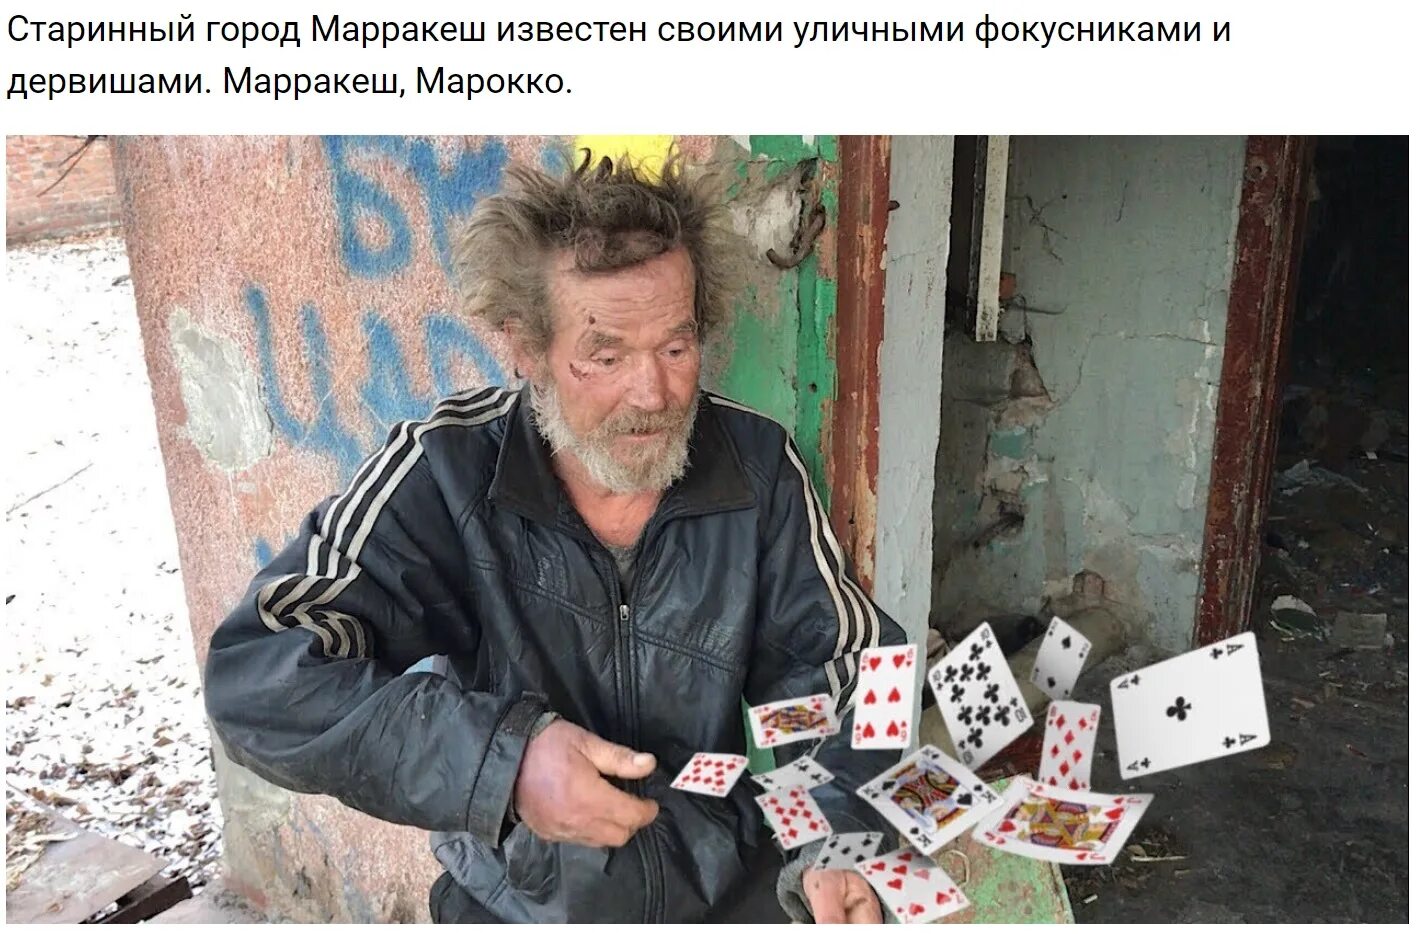 Бомж билет. Алкаши играют в карты. Бомжи играют в Покер.